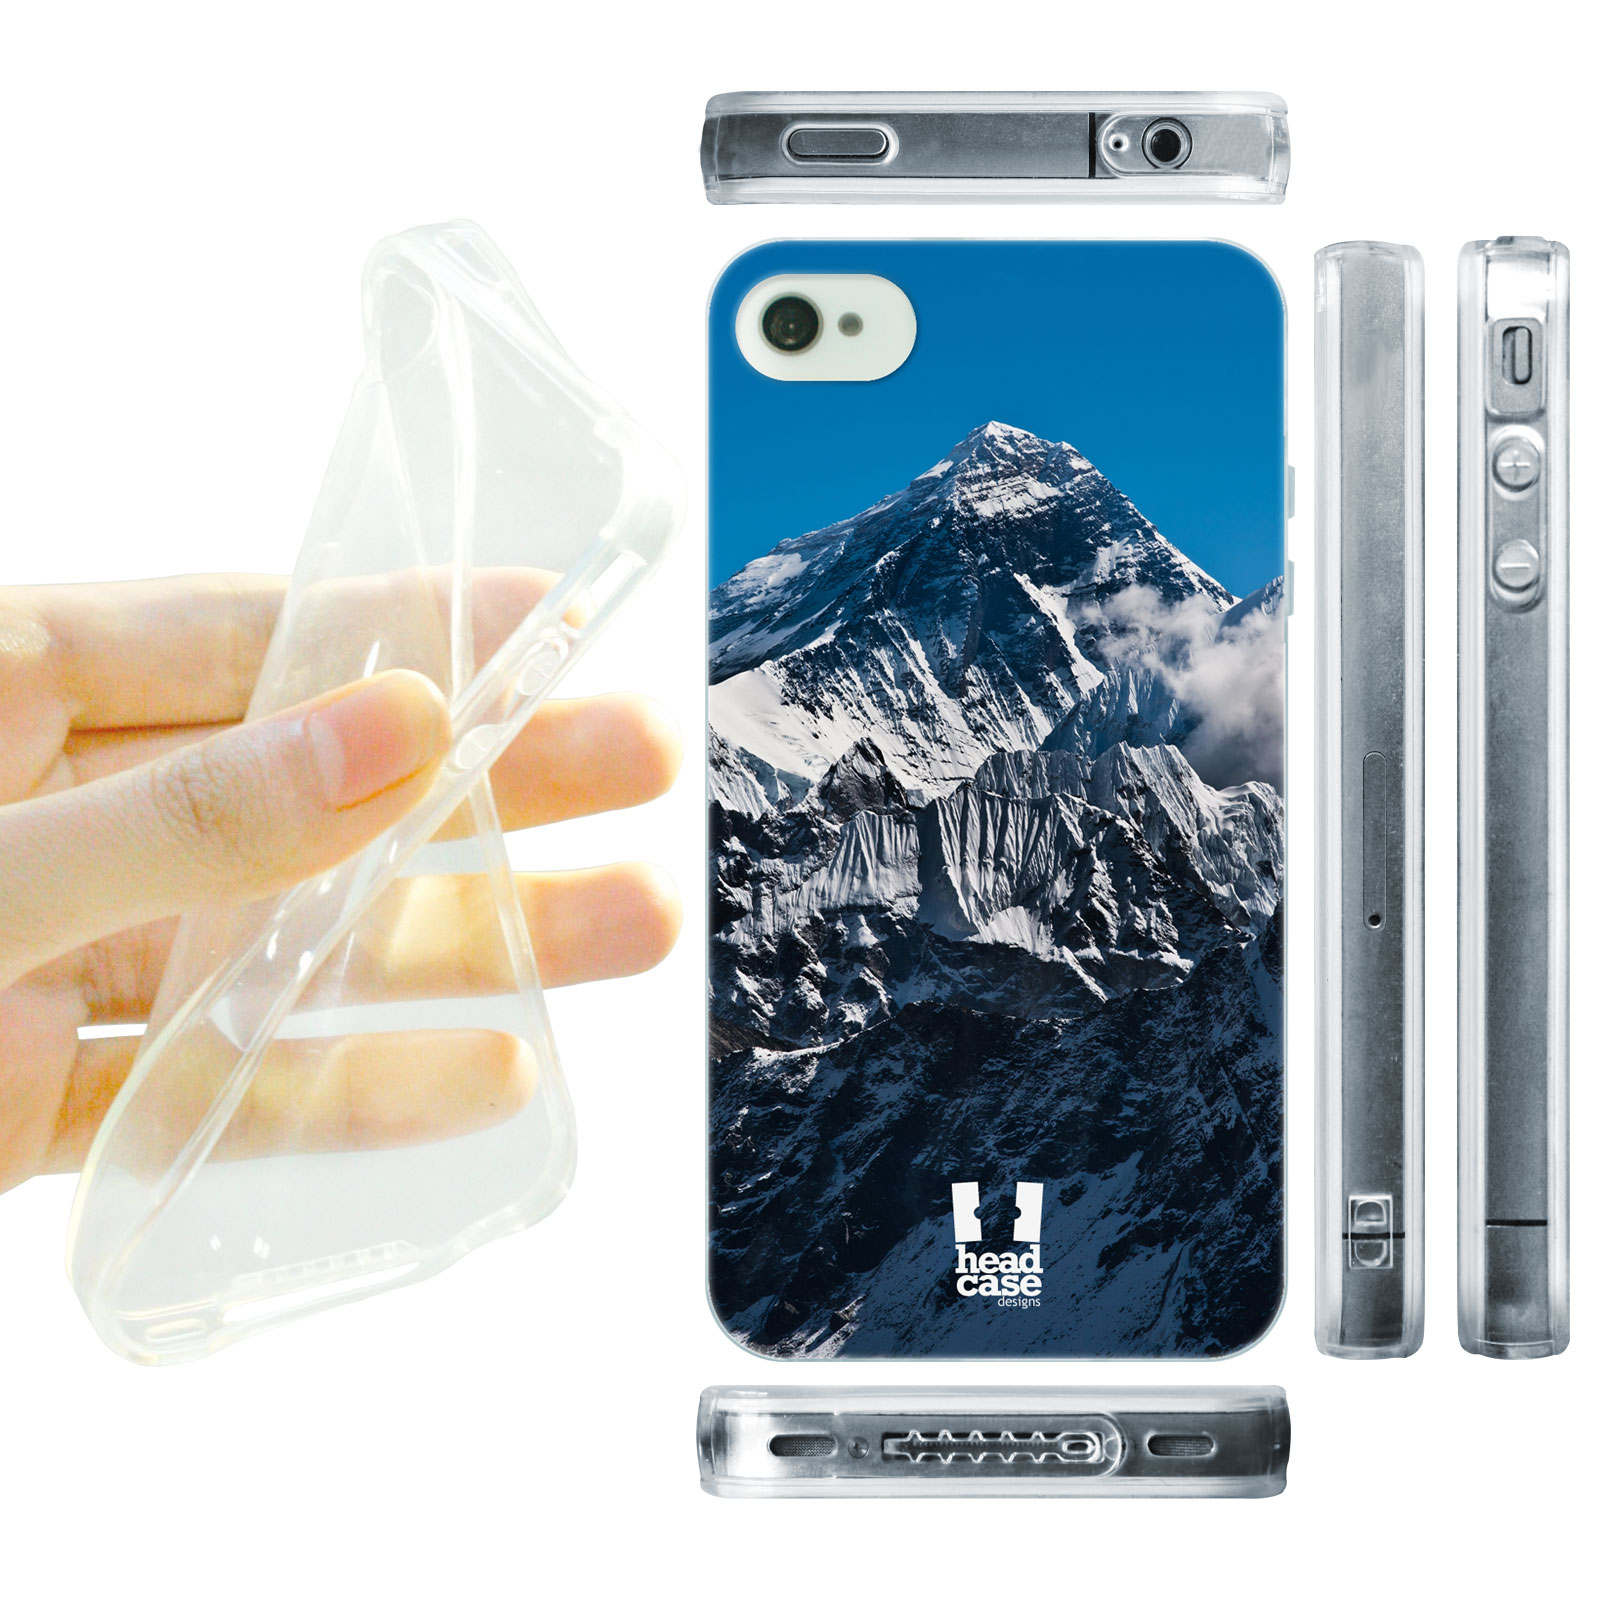 HEAD CASE silikonový obal na mobil Iphone 4/4S foto vrchol Mount Everest Himálaje 